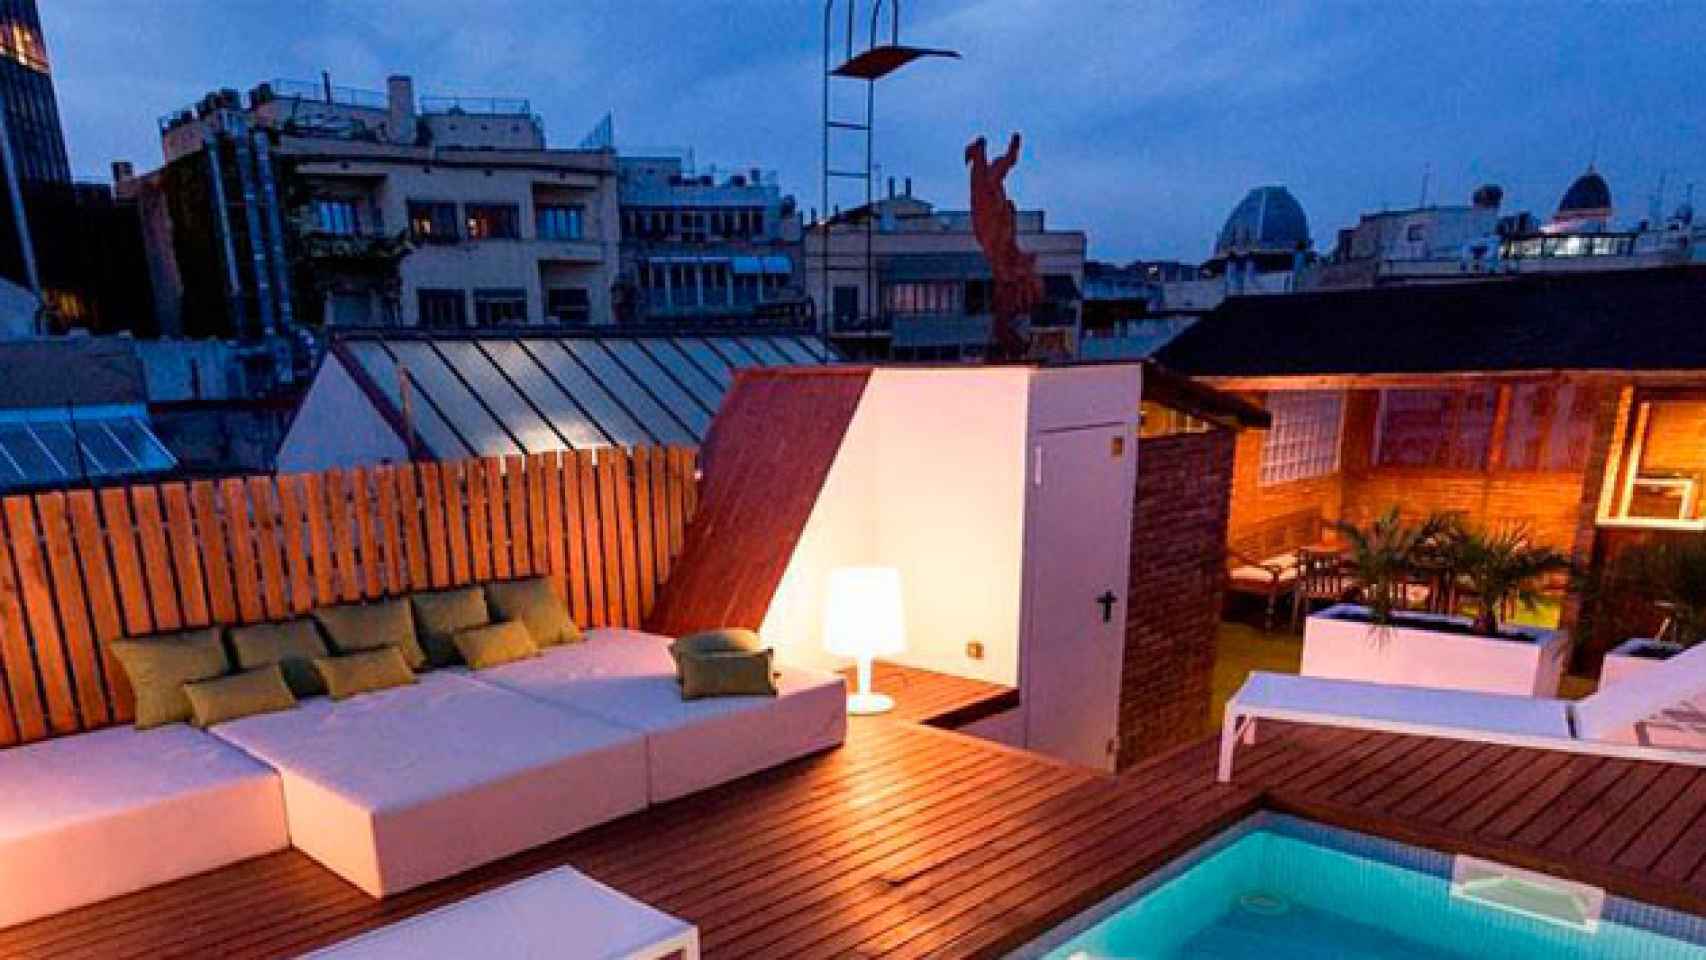 Un apartamento anunciado por Airbnb en Barcelona ciudad / CG